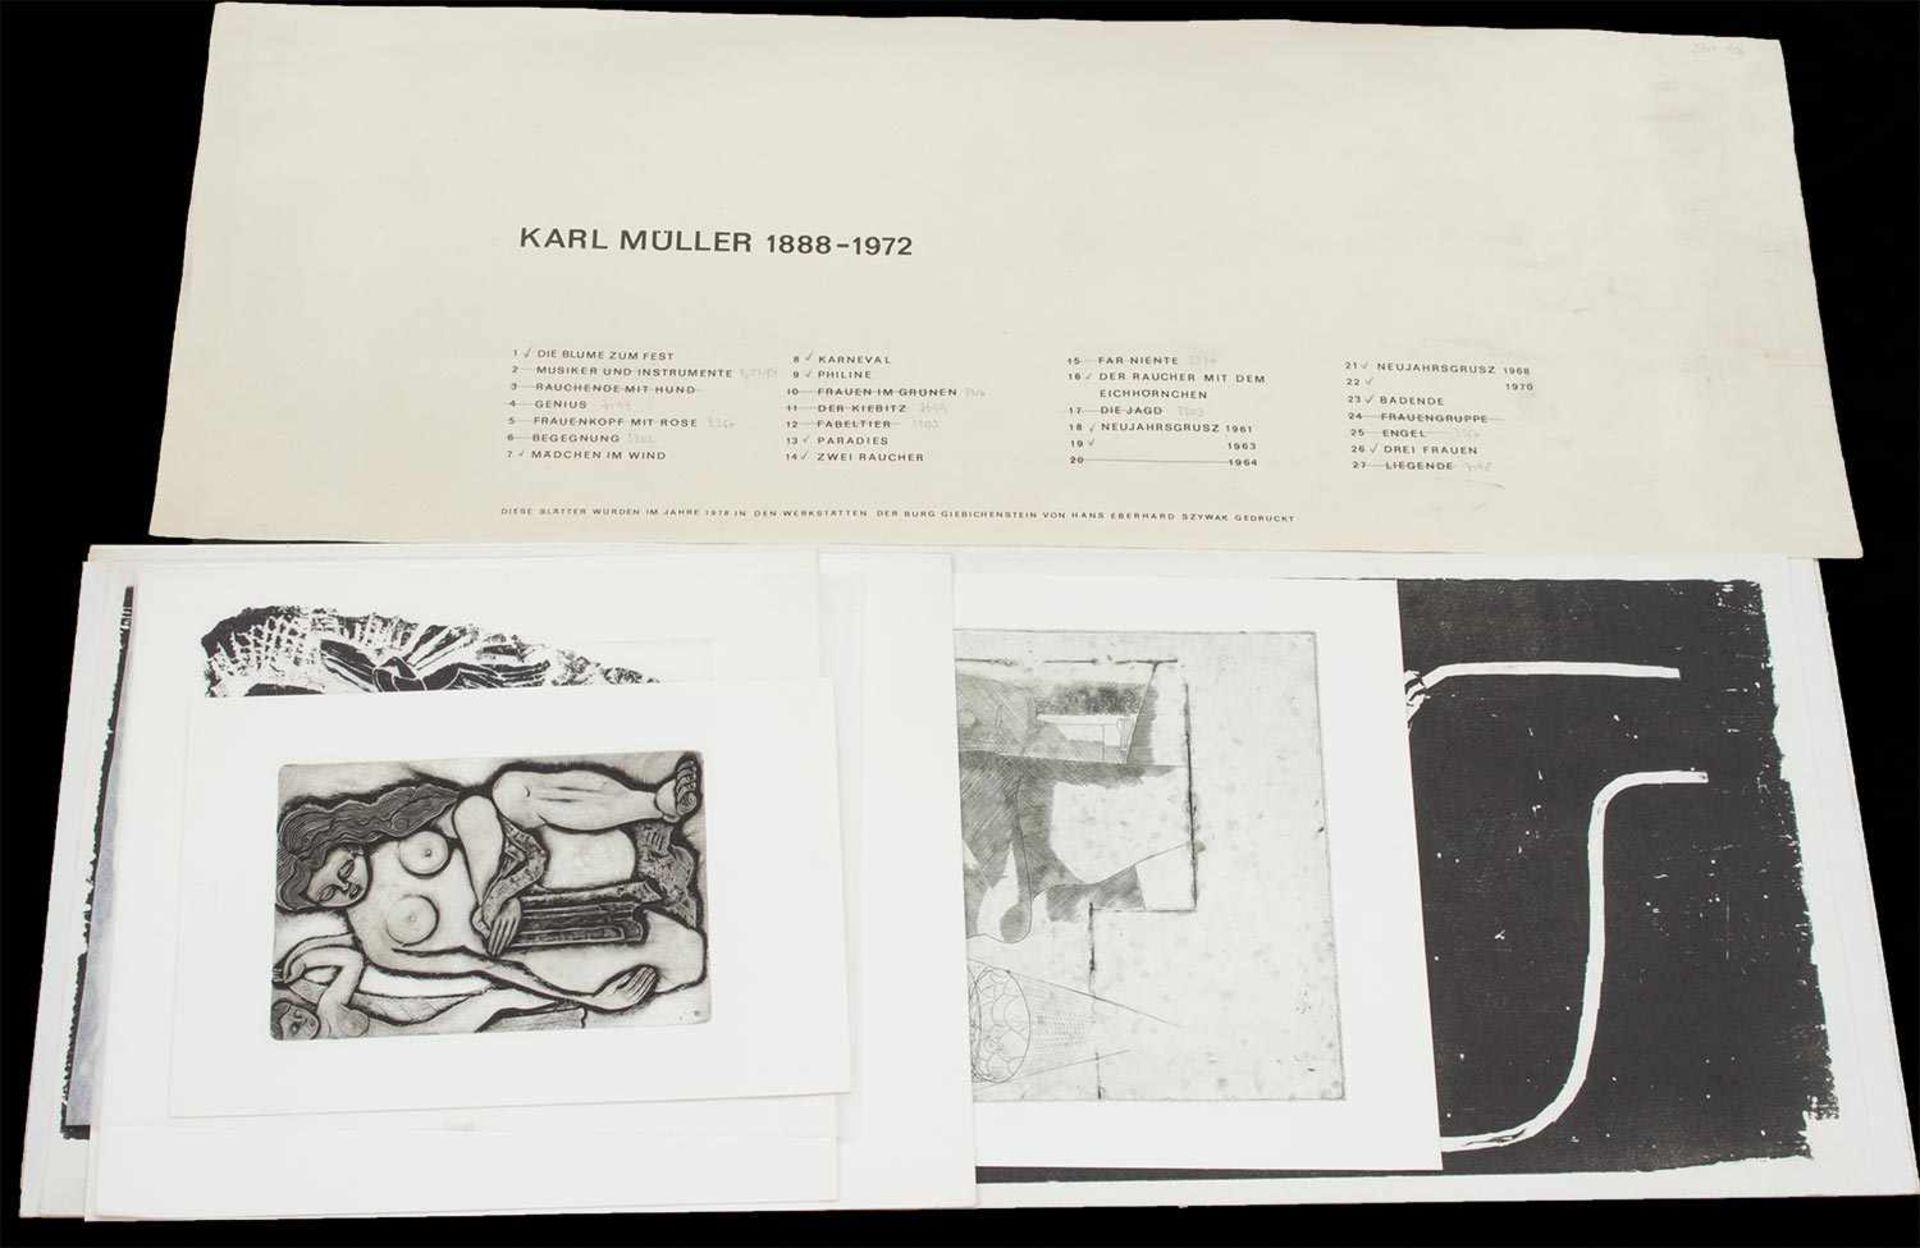 Karl Müller(Berlin 1888 - 1972 Halle/ Saale, deutscher Metallbildner, Bildhauer u. Grafiker, Studium